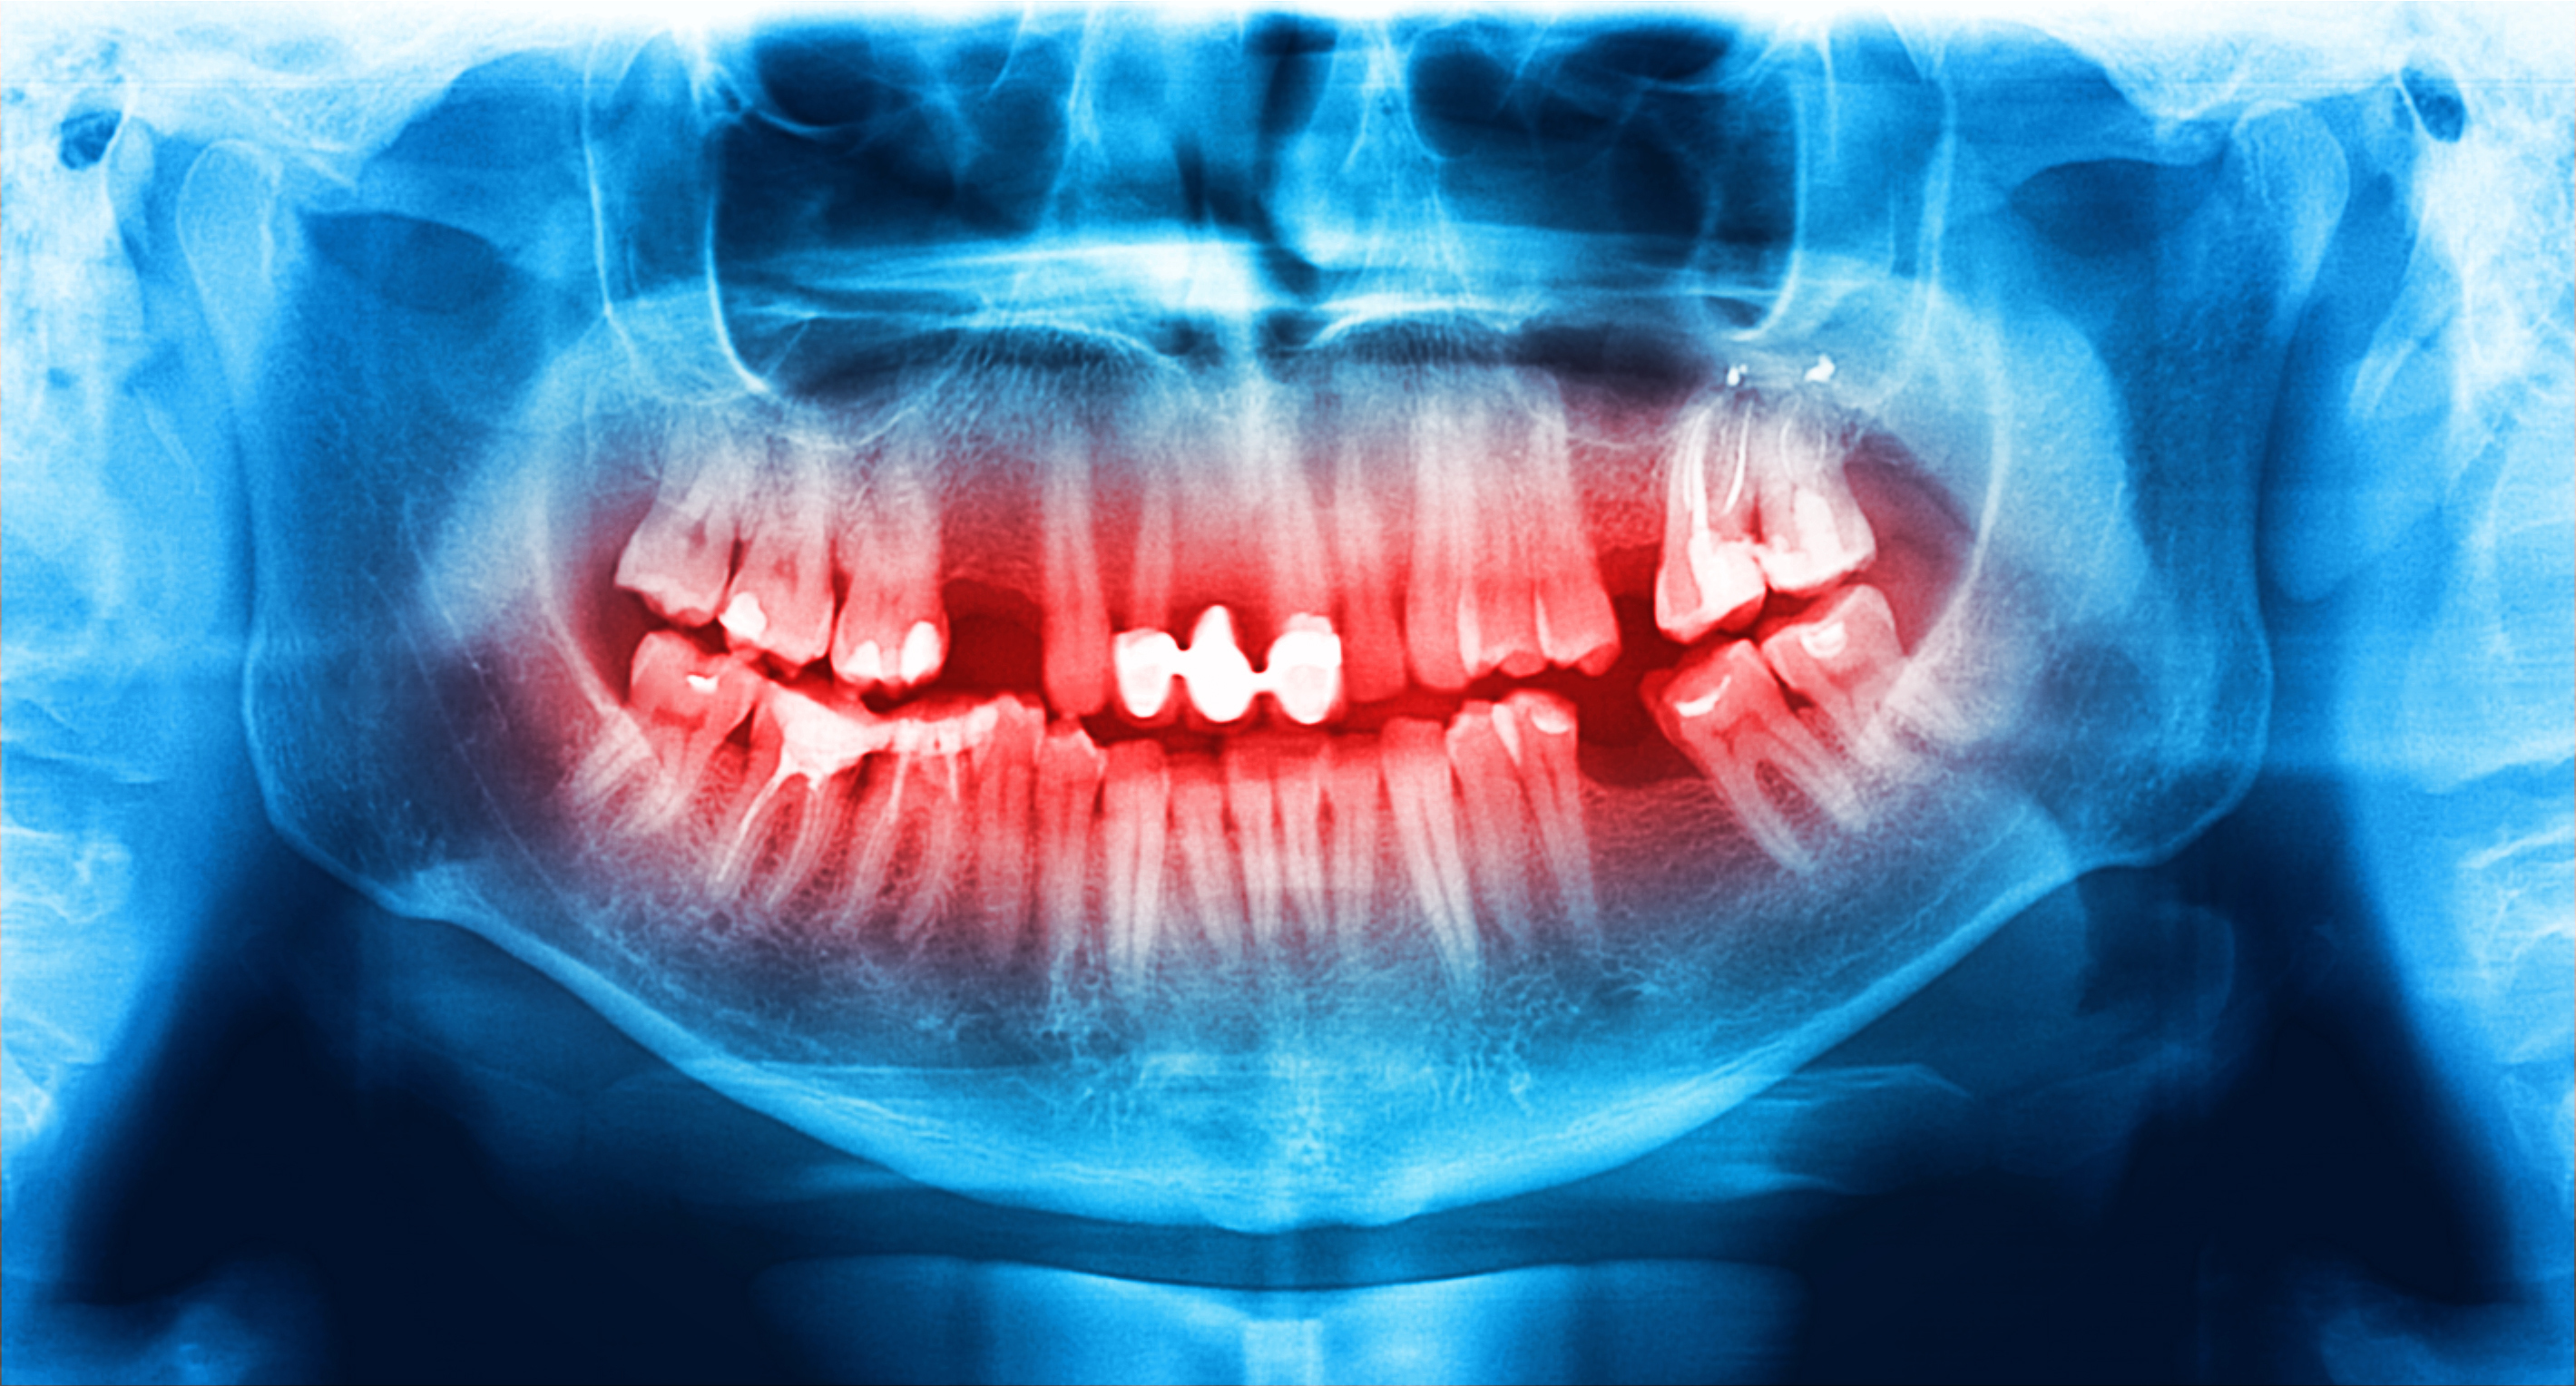 Снимок зубов нижней челюсти